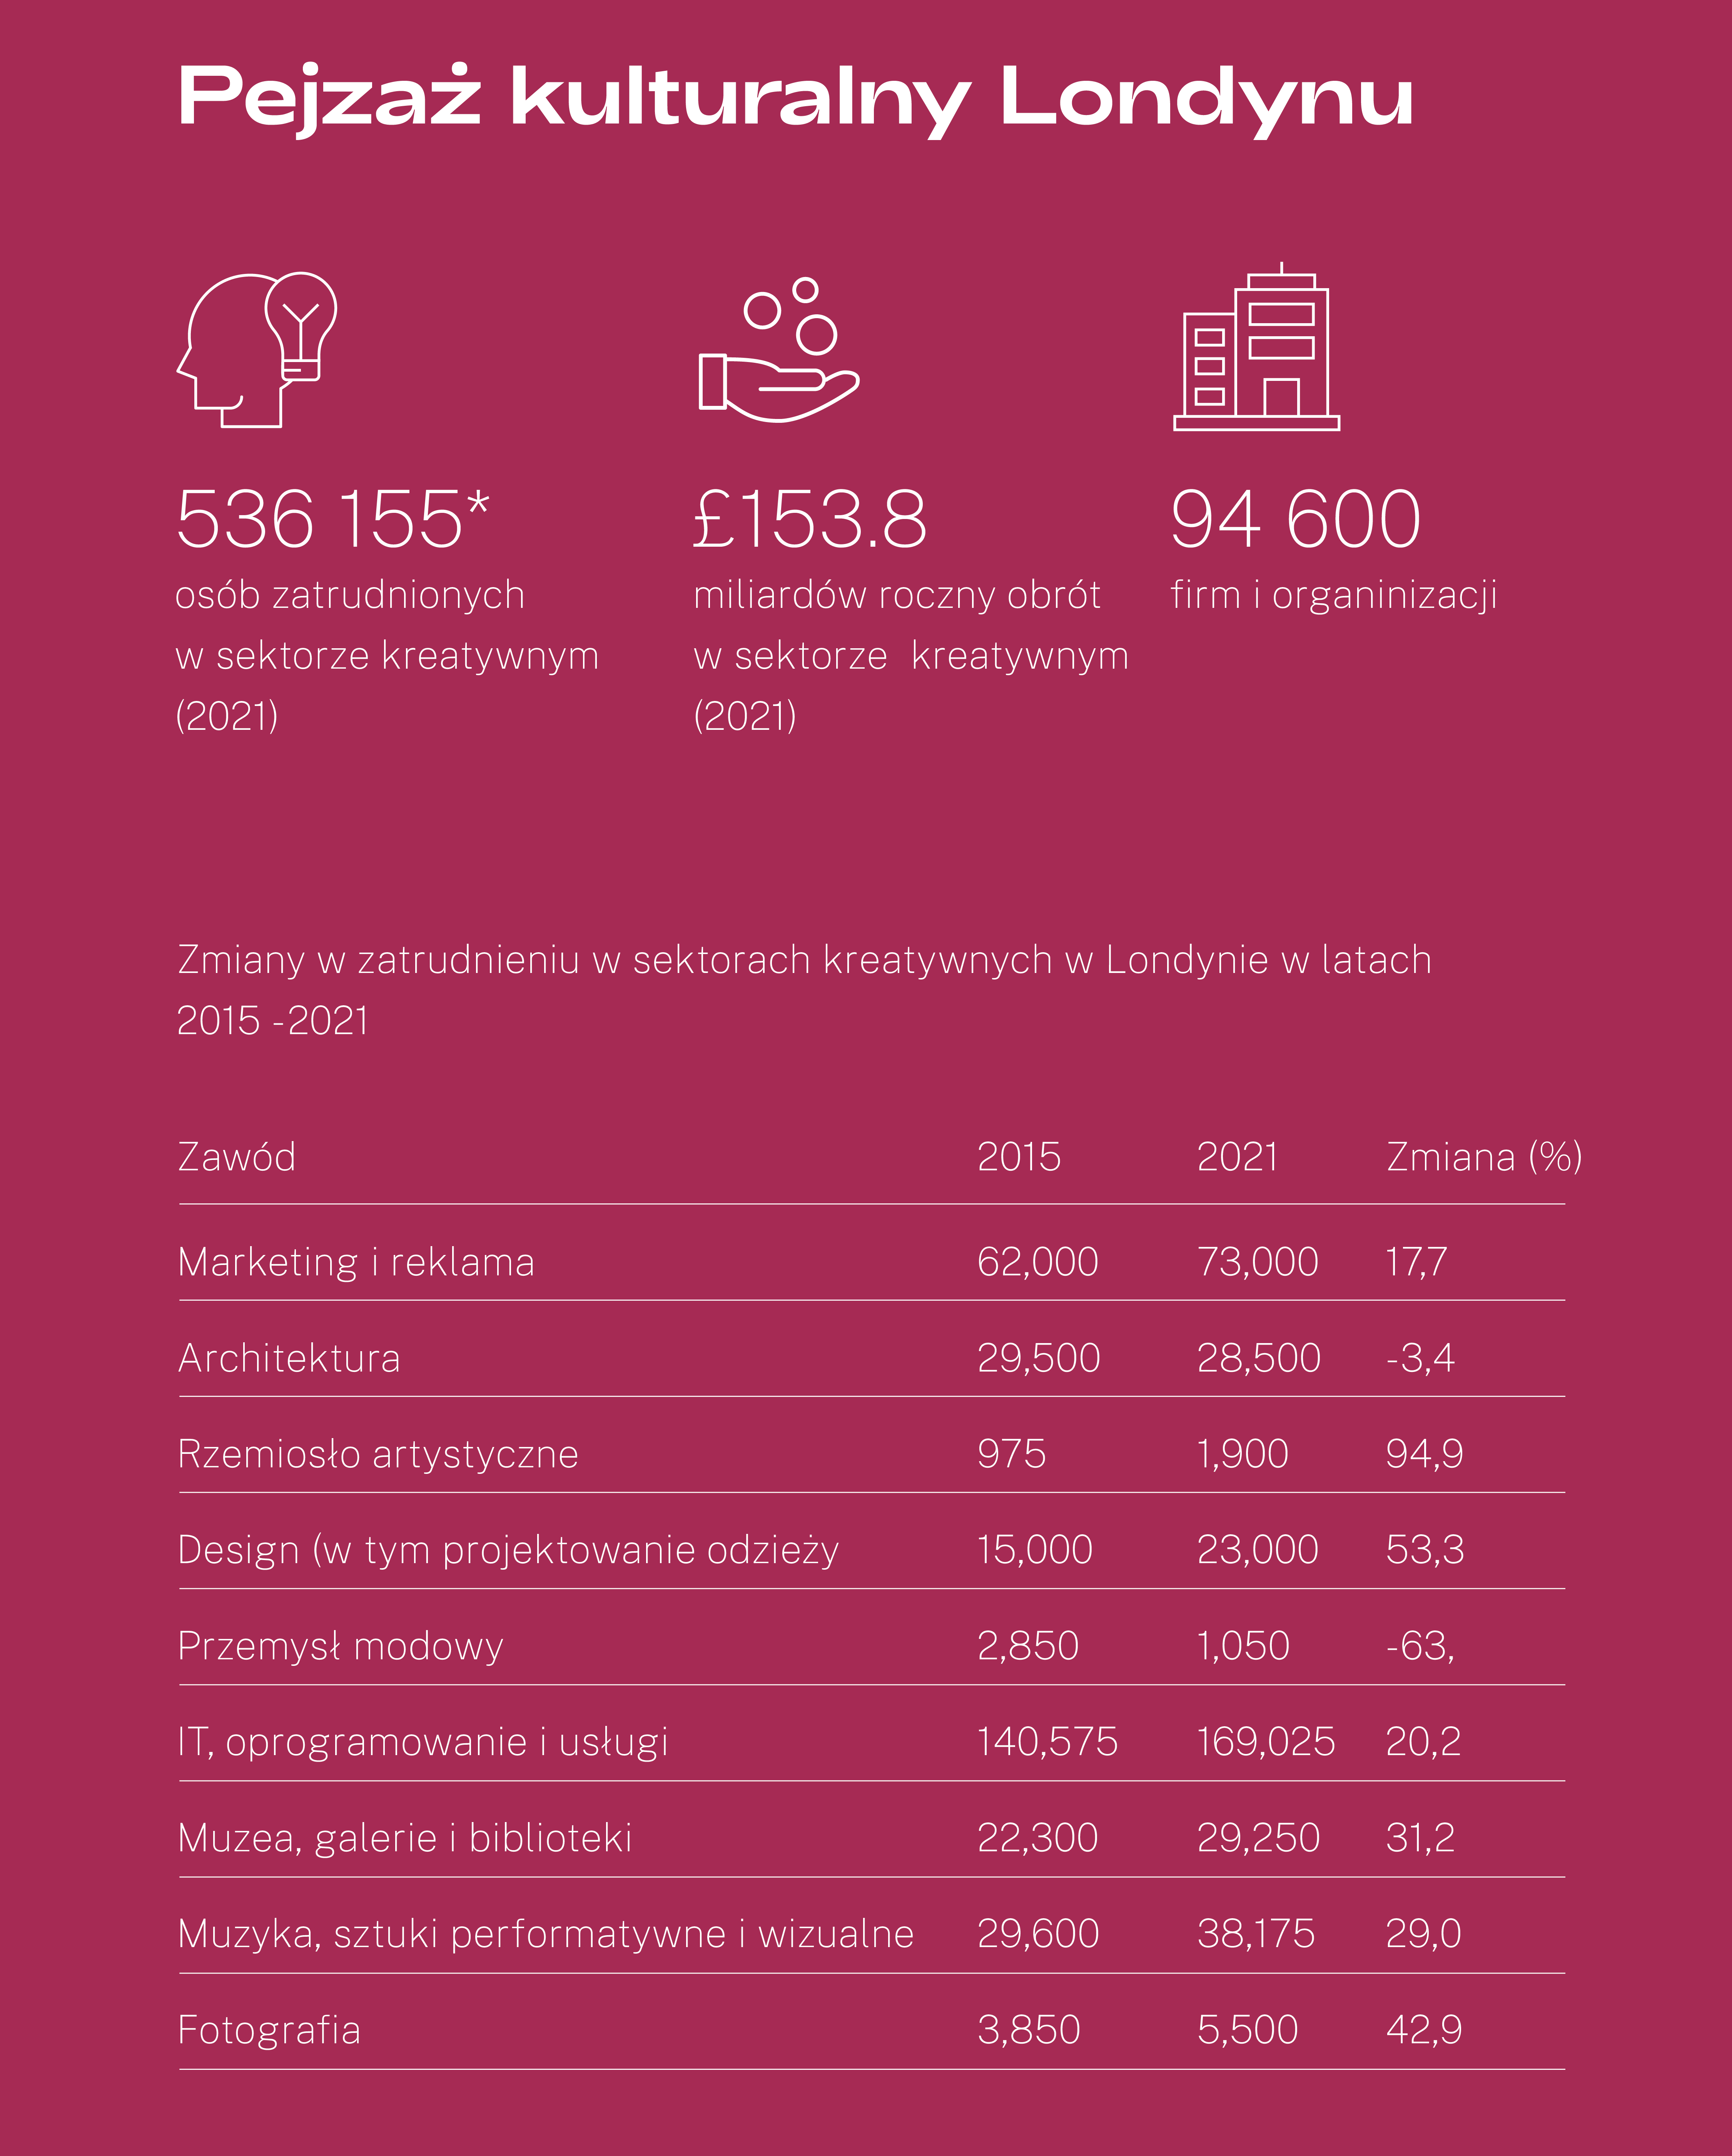 Ikony ilustrujące dane w sektorze kulturalnym Londynu. 536 tys osób zatrudnionych w sektorze, 152 miliardy funtów obrotu w sektorze, 94 tys firm i organizacji. Poniżej tabela przedstawiająca zmiany w zatrudnieniu w sektorze kreatywnym w latach 2015 - 2021. Najwięcej zatrudnionych było w sektorze IT: 140 tys w roku 2015 i 169 tys w roku 2021.